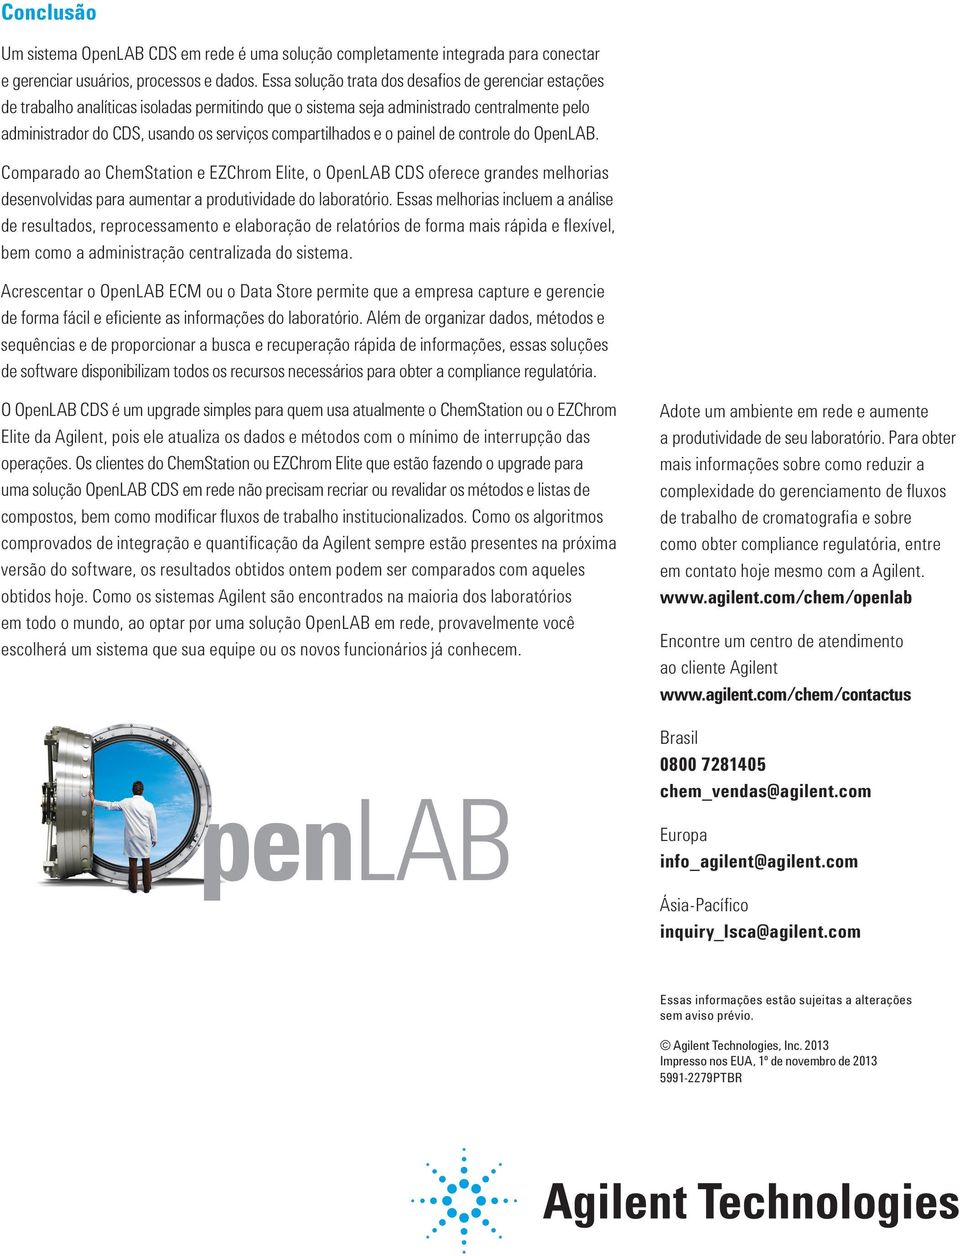 compartilhados e o painel de controle do OpenLAB. Comparado ao ChemStation e EZChrom Elite, o OpenLAB CDS oferece grandes melhorias desenvolvidas para aumentar a produtividade do laboratório.